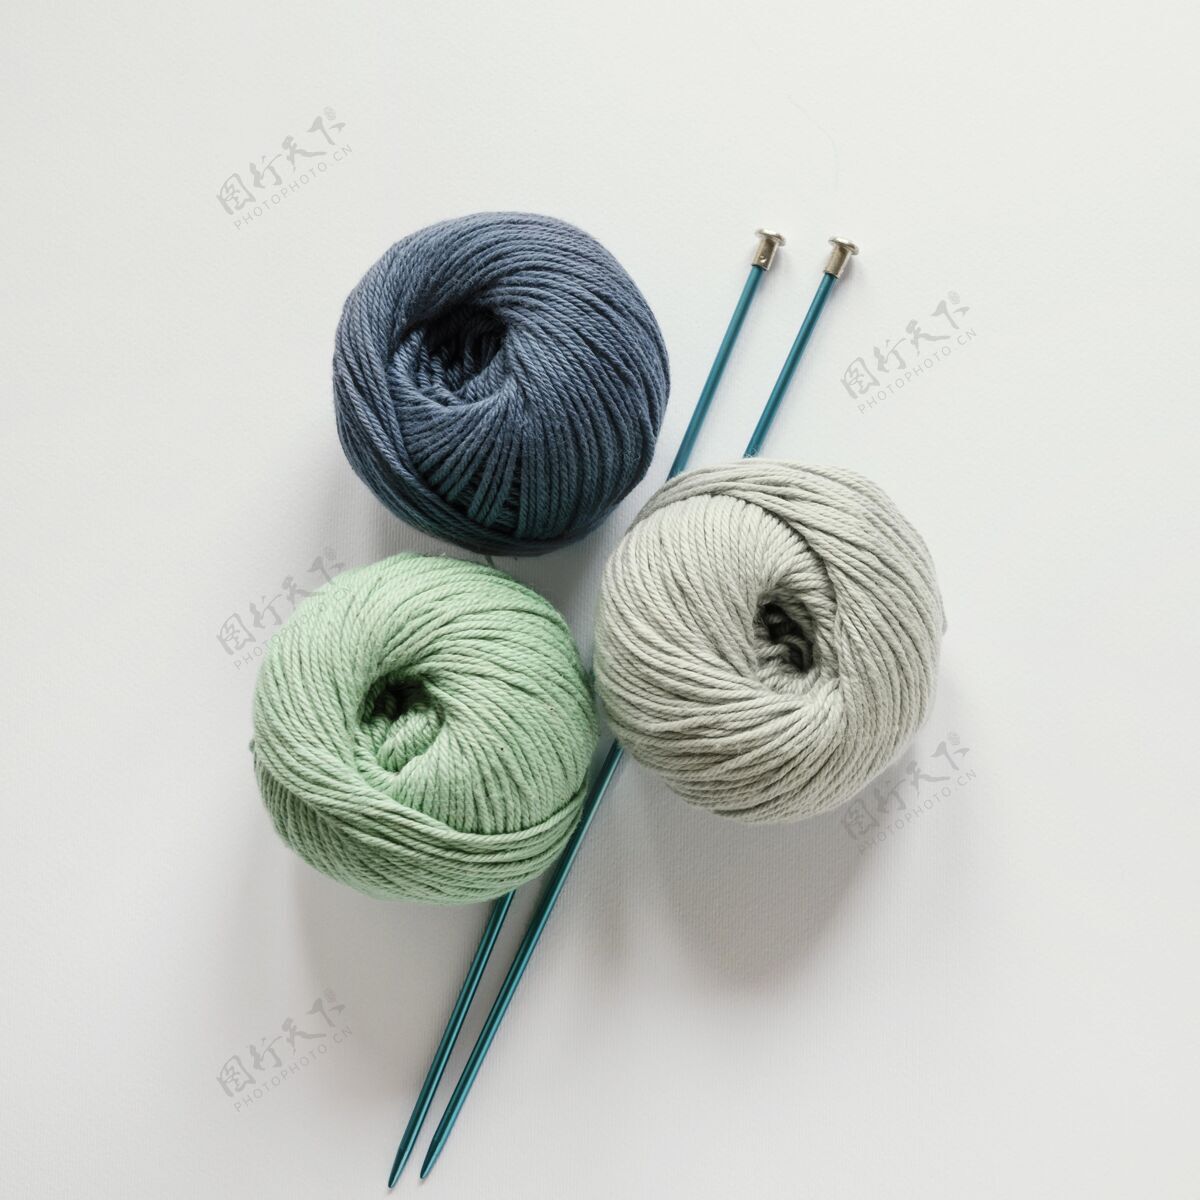 针织编织针和羊毛羊毛编织机纺织品